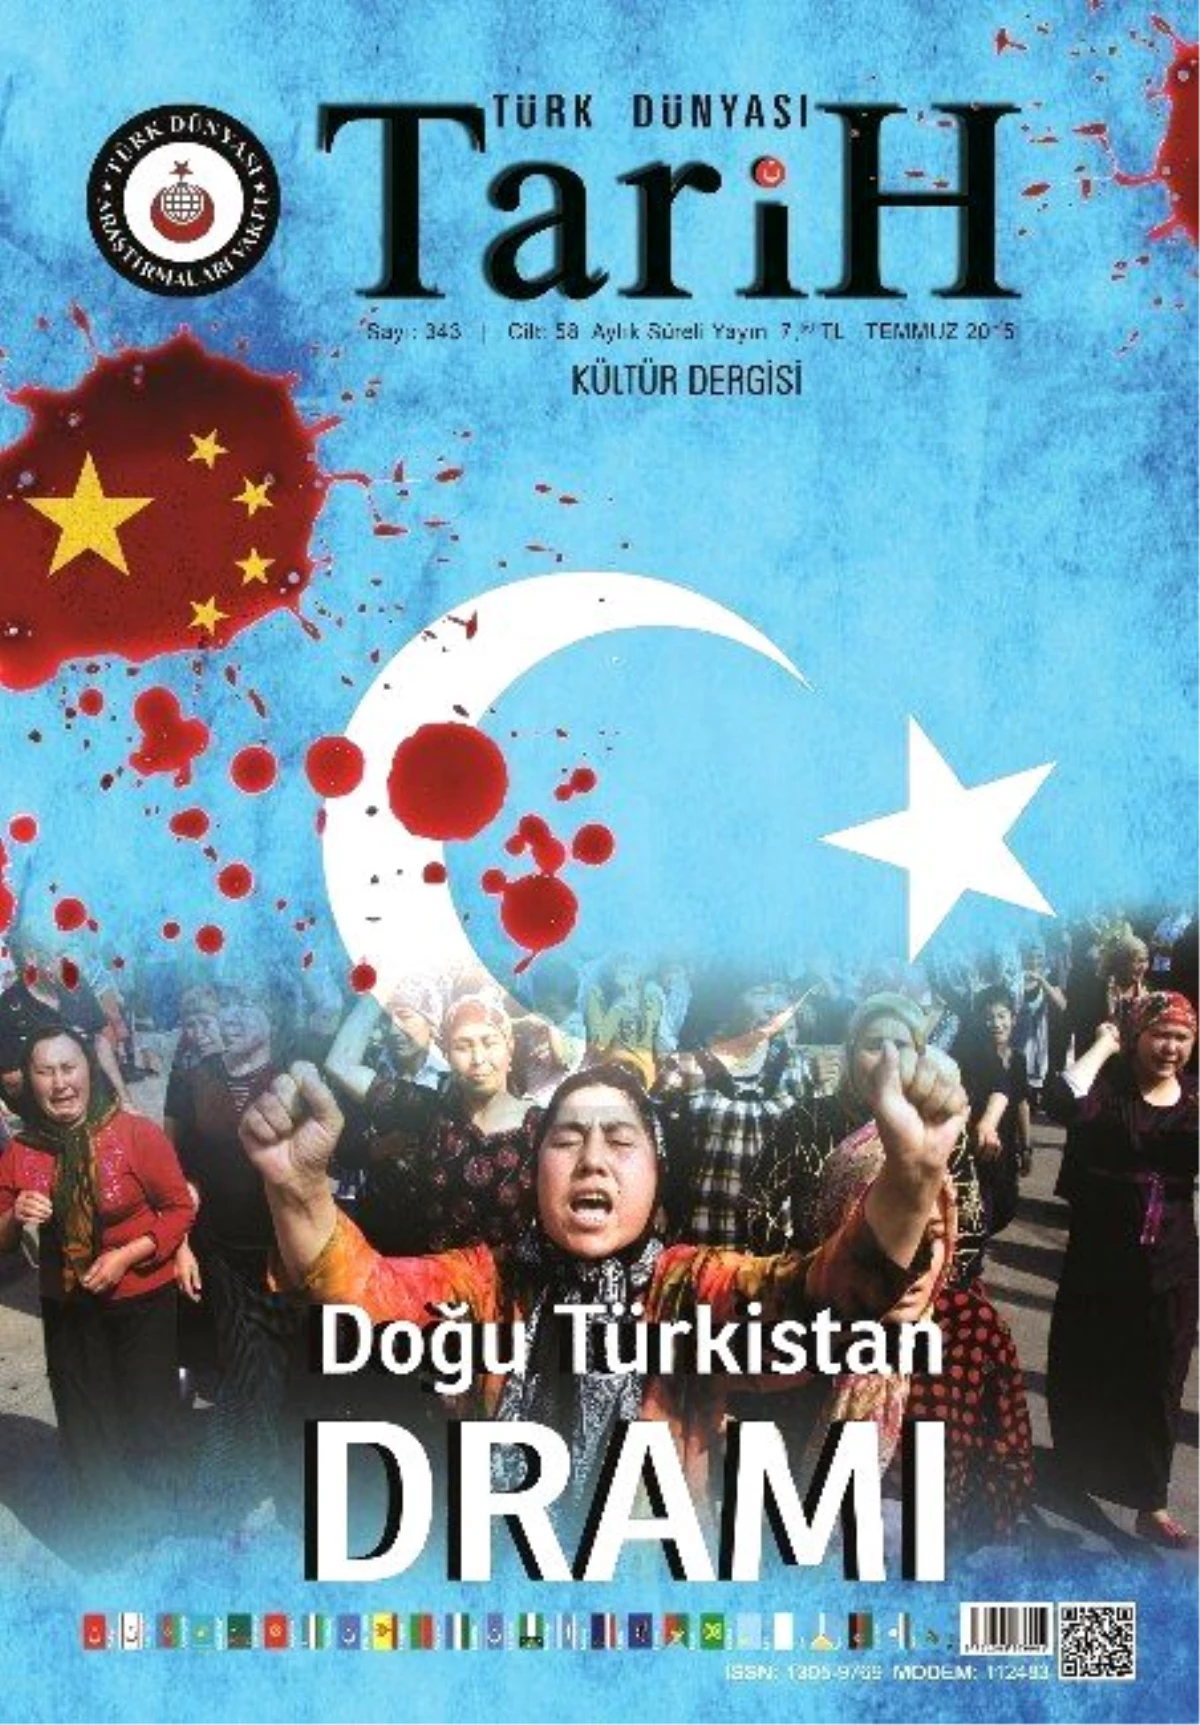 Türk Dünyası Tarih Dergisi, Doğu Türkistan Dramına Dikkat Çekti